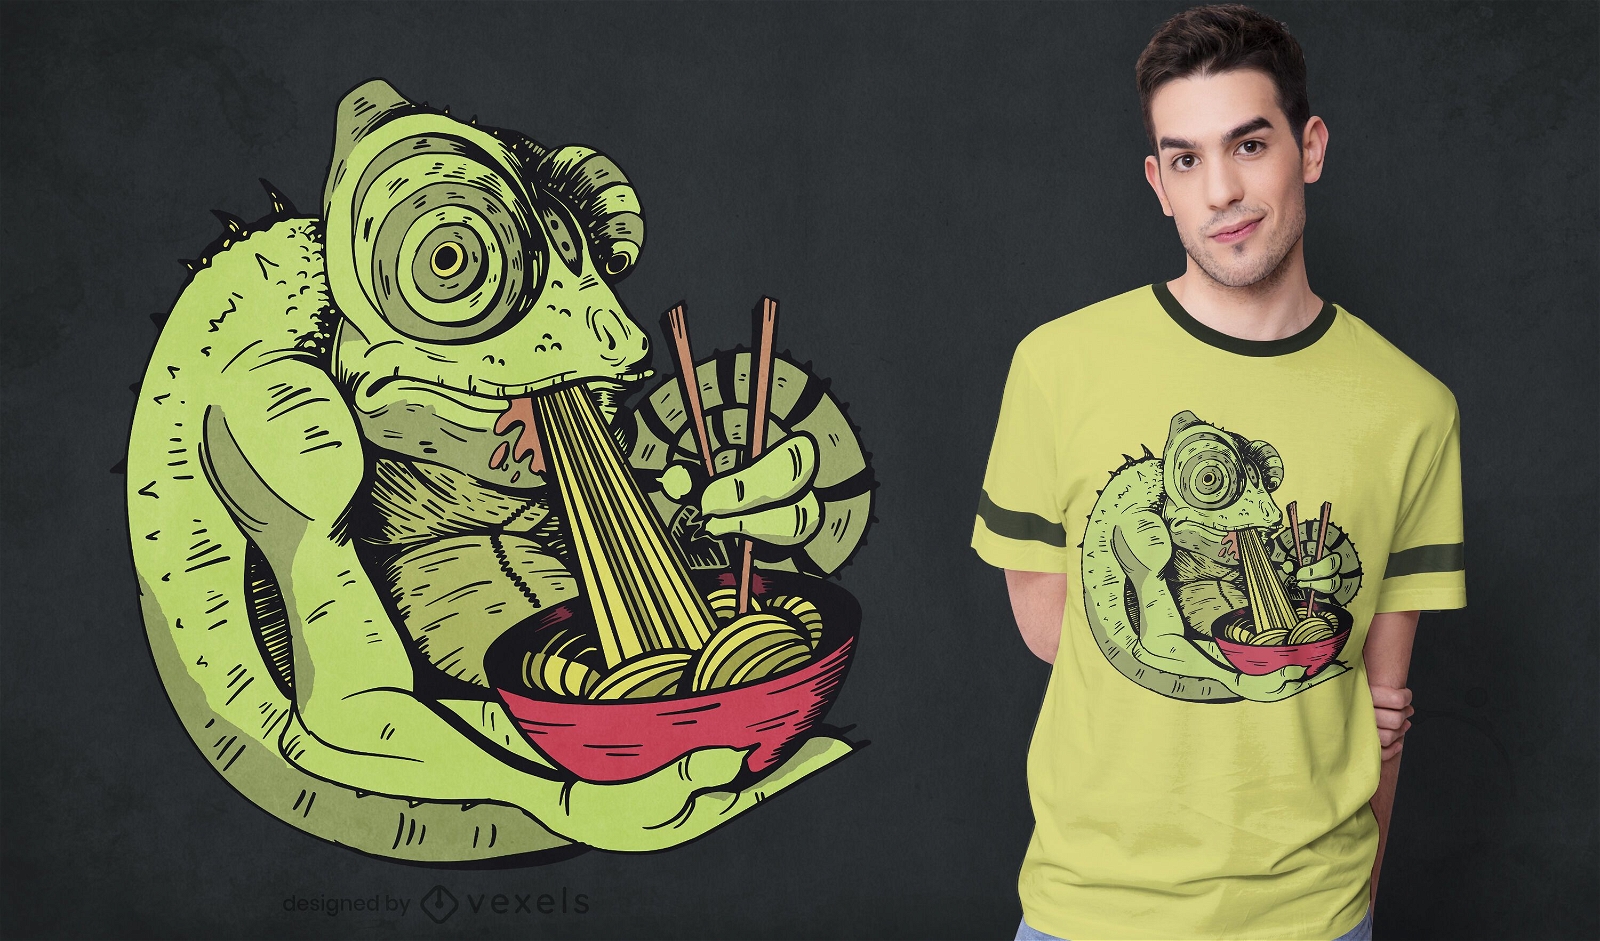 Chameleon eating ramen t-shirt design